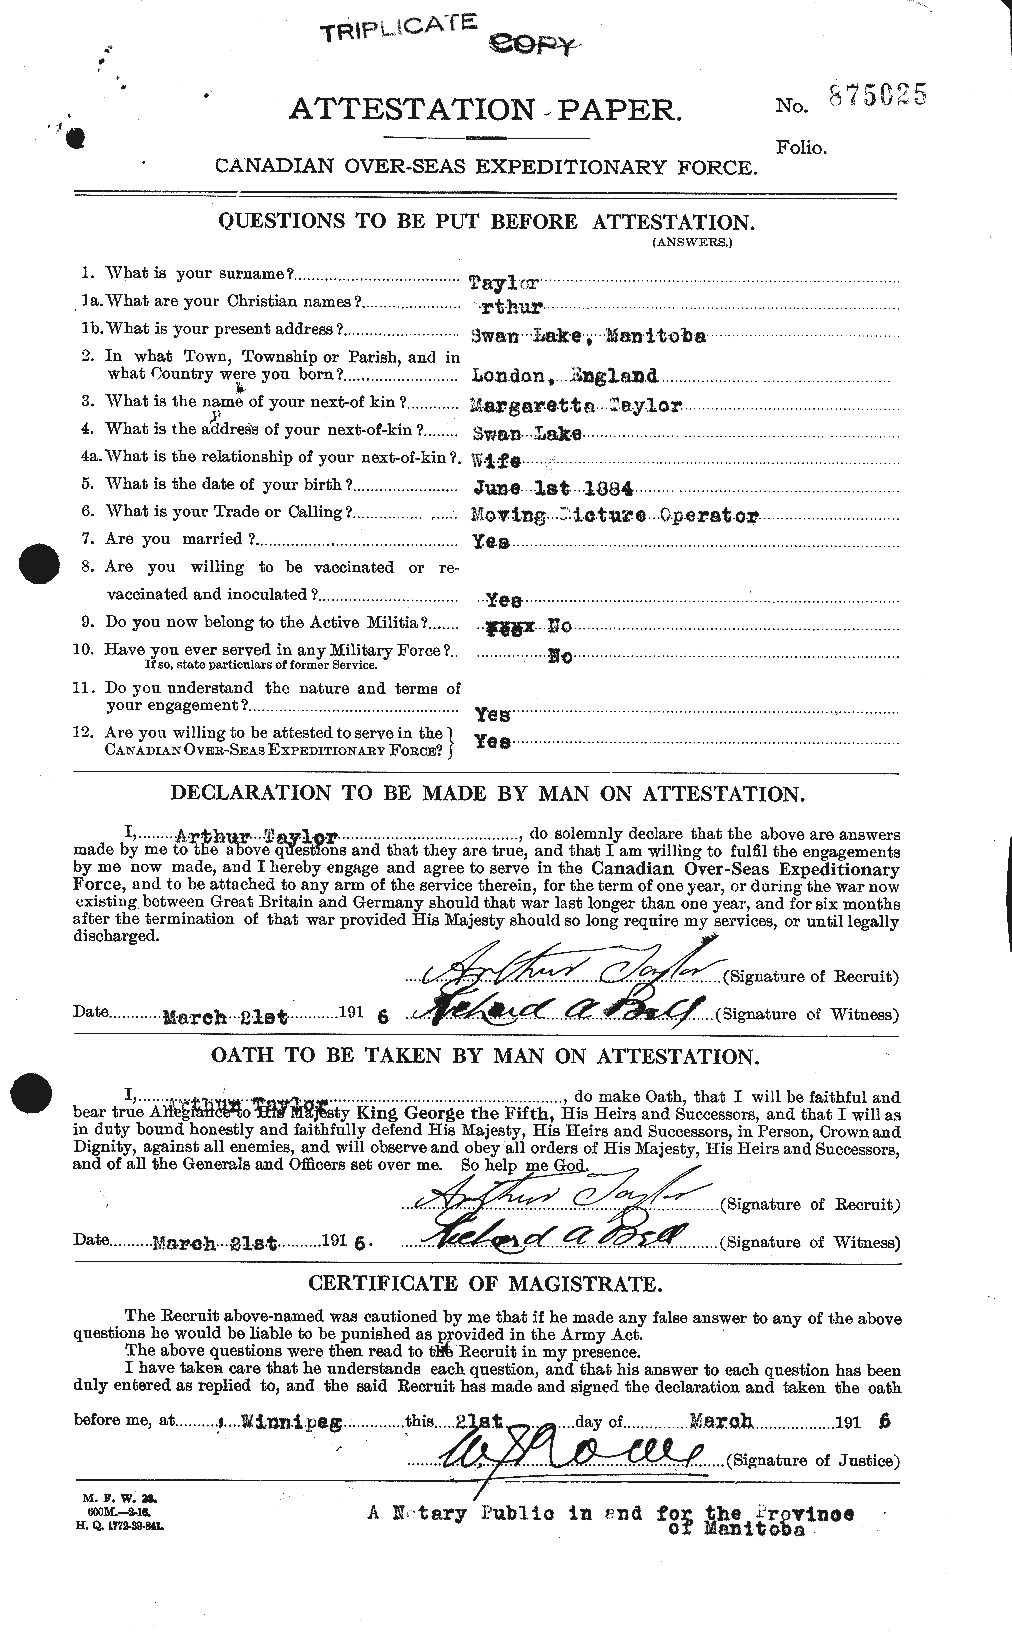 Dossiers du Personnel de la Première Guerre mondiale - CEC 626710a